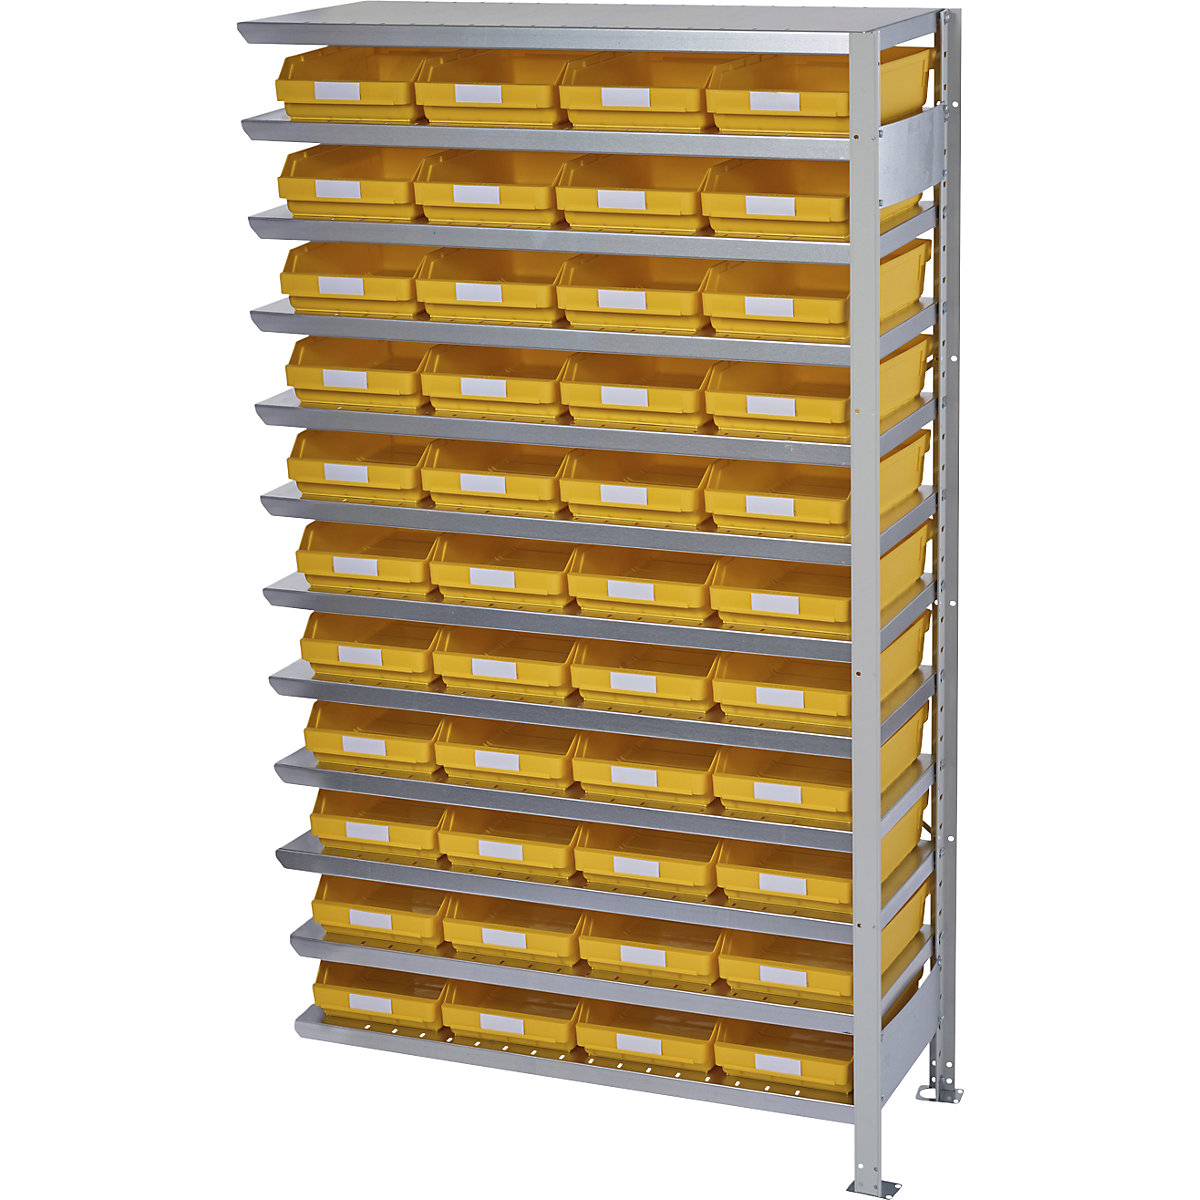 Zásuvný regál s regálovými přepravkami – STEMO, výška regálu 1790 mm, přístavný regál, hloubka 500 mm, 44 přepravek žlutých-24